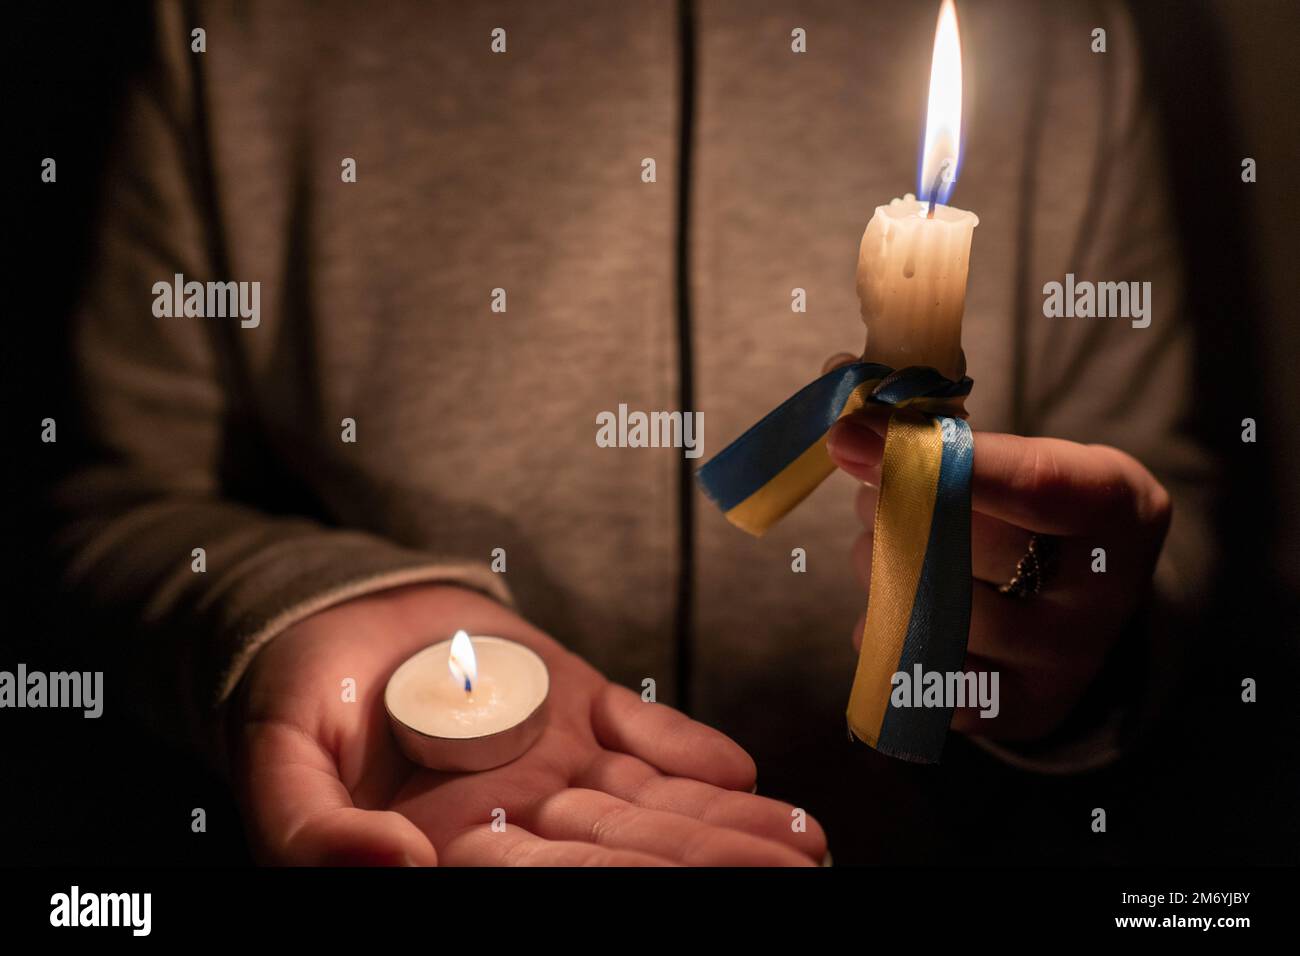 Stromausfall. Energiekrise. Stromausfallkonzept. Mädchen hält zwei brennende Kerzen mit einem gelb-blauen Band in der Hand (das nationale Symbol der Ukraine) Stockfoto